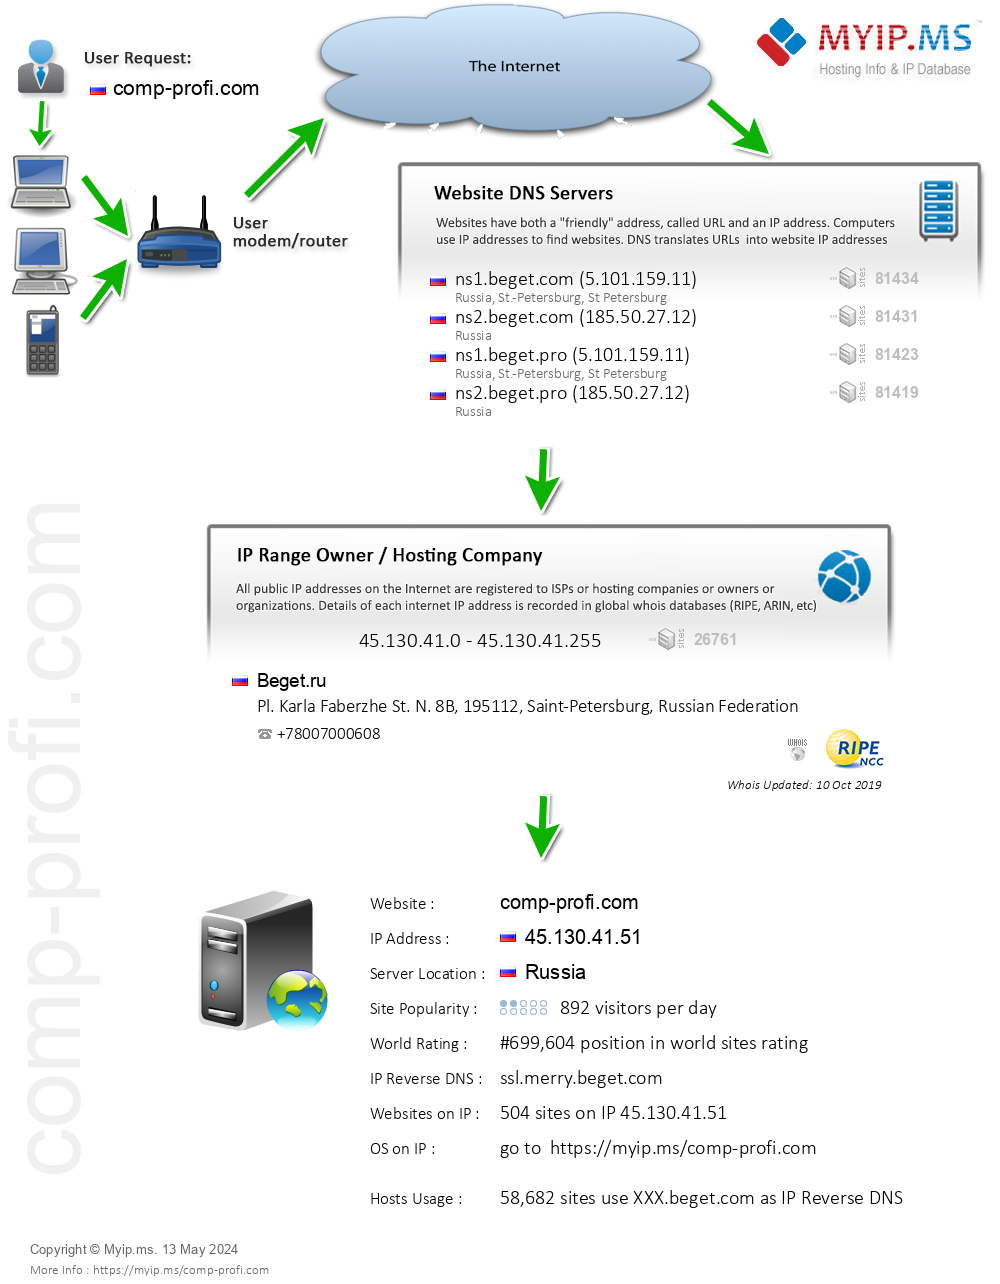 Comp-profi.com - Website Hosting Visual IP Diagram